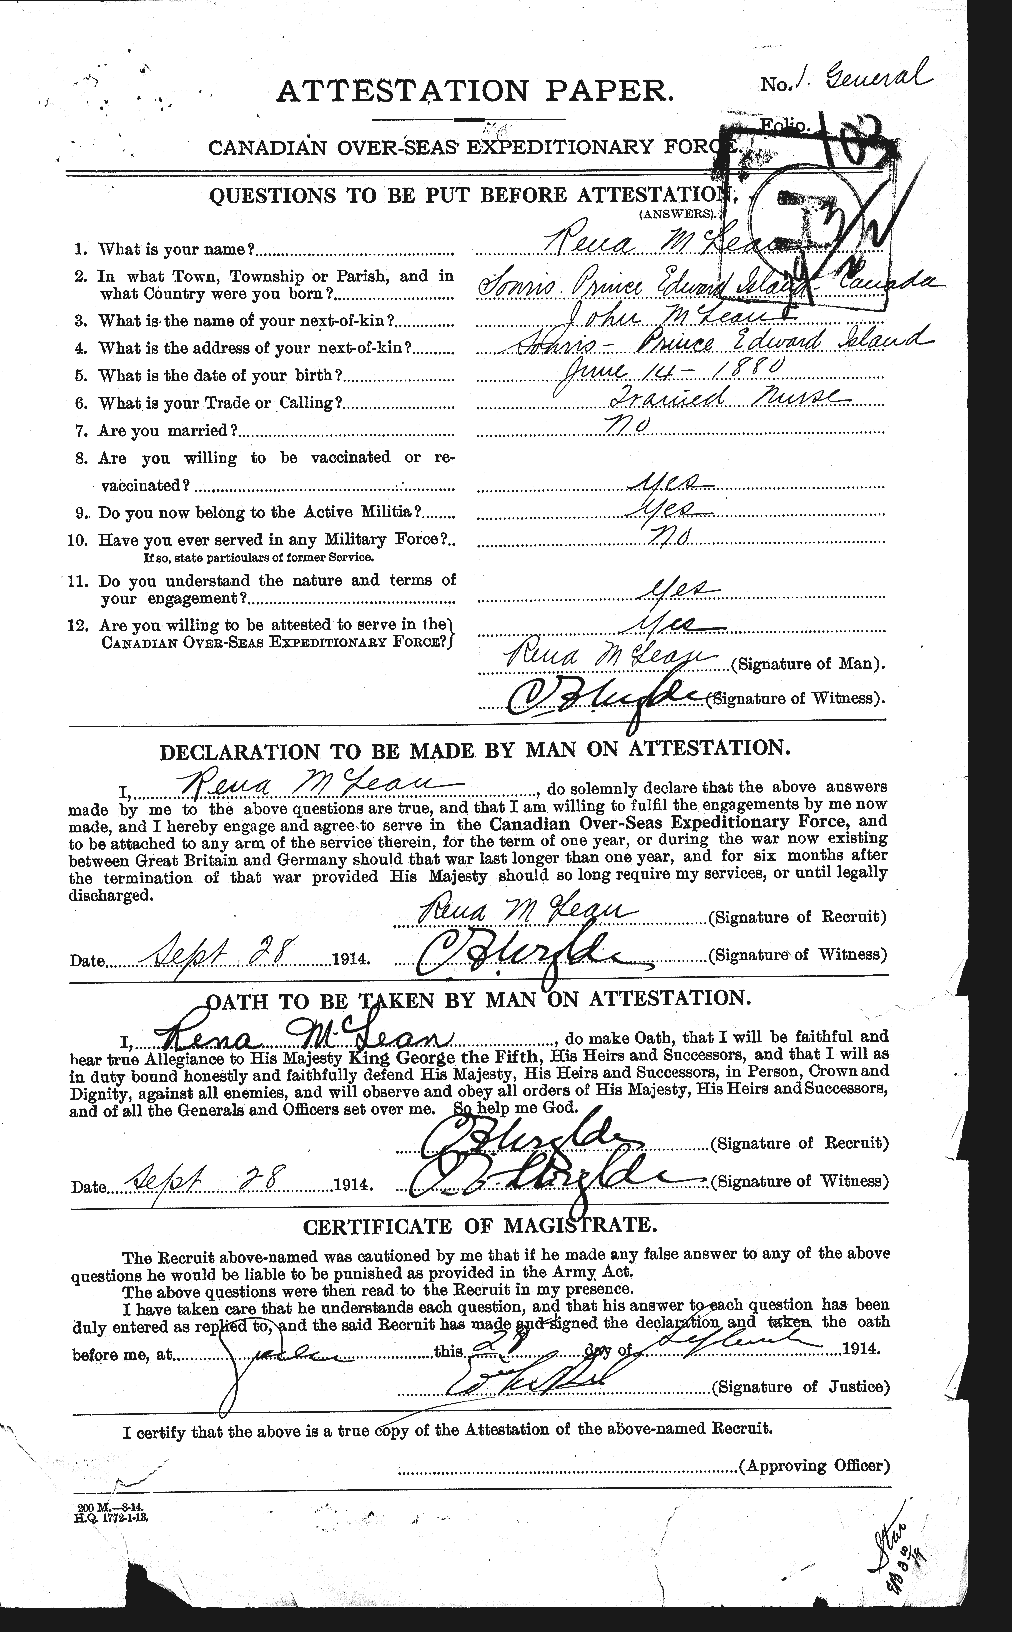 Dossiers du Personnel de la Première Guerre mondiale - CEC 237308a